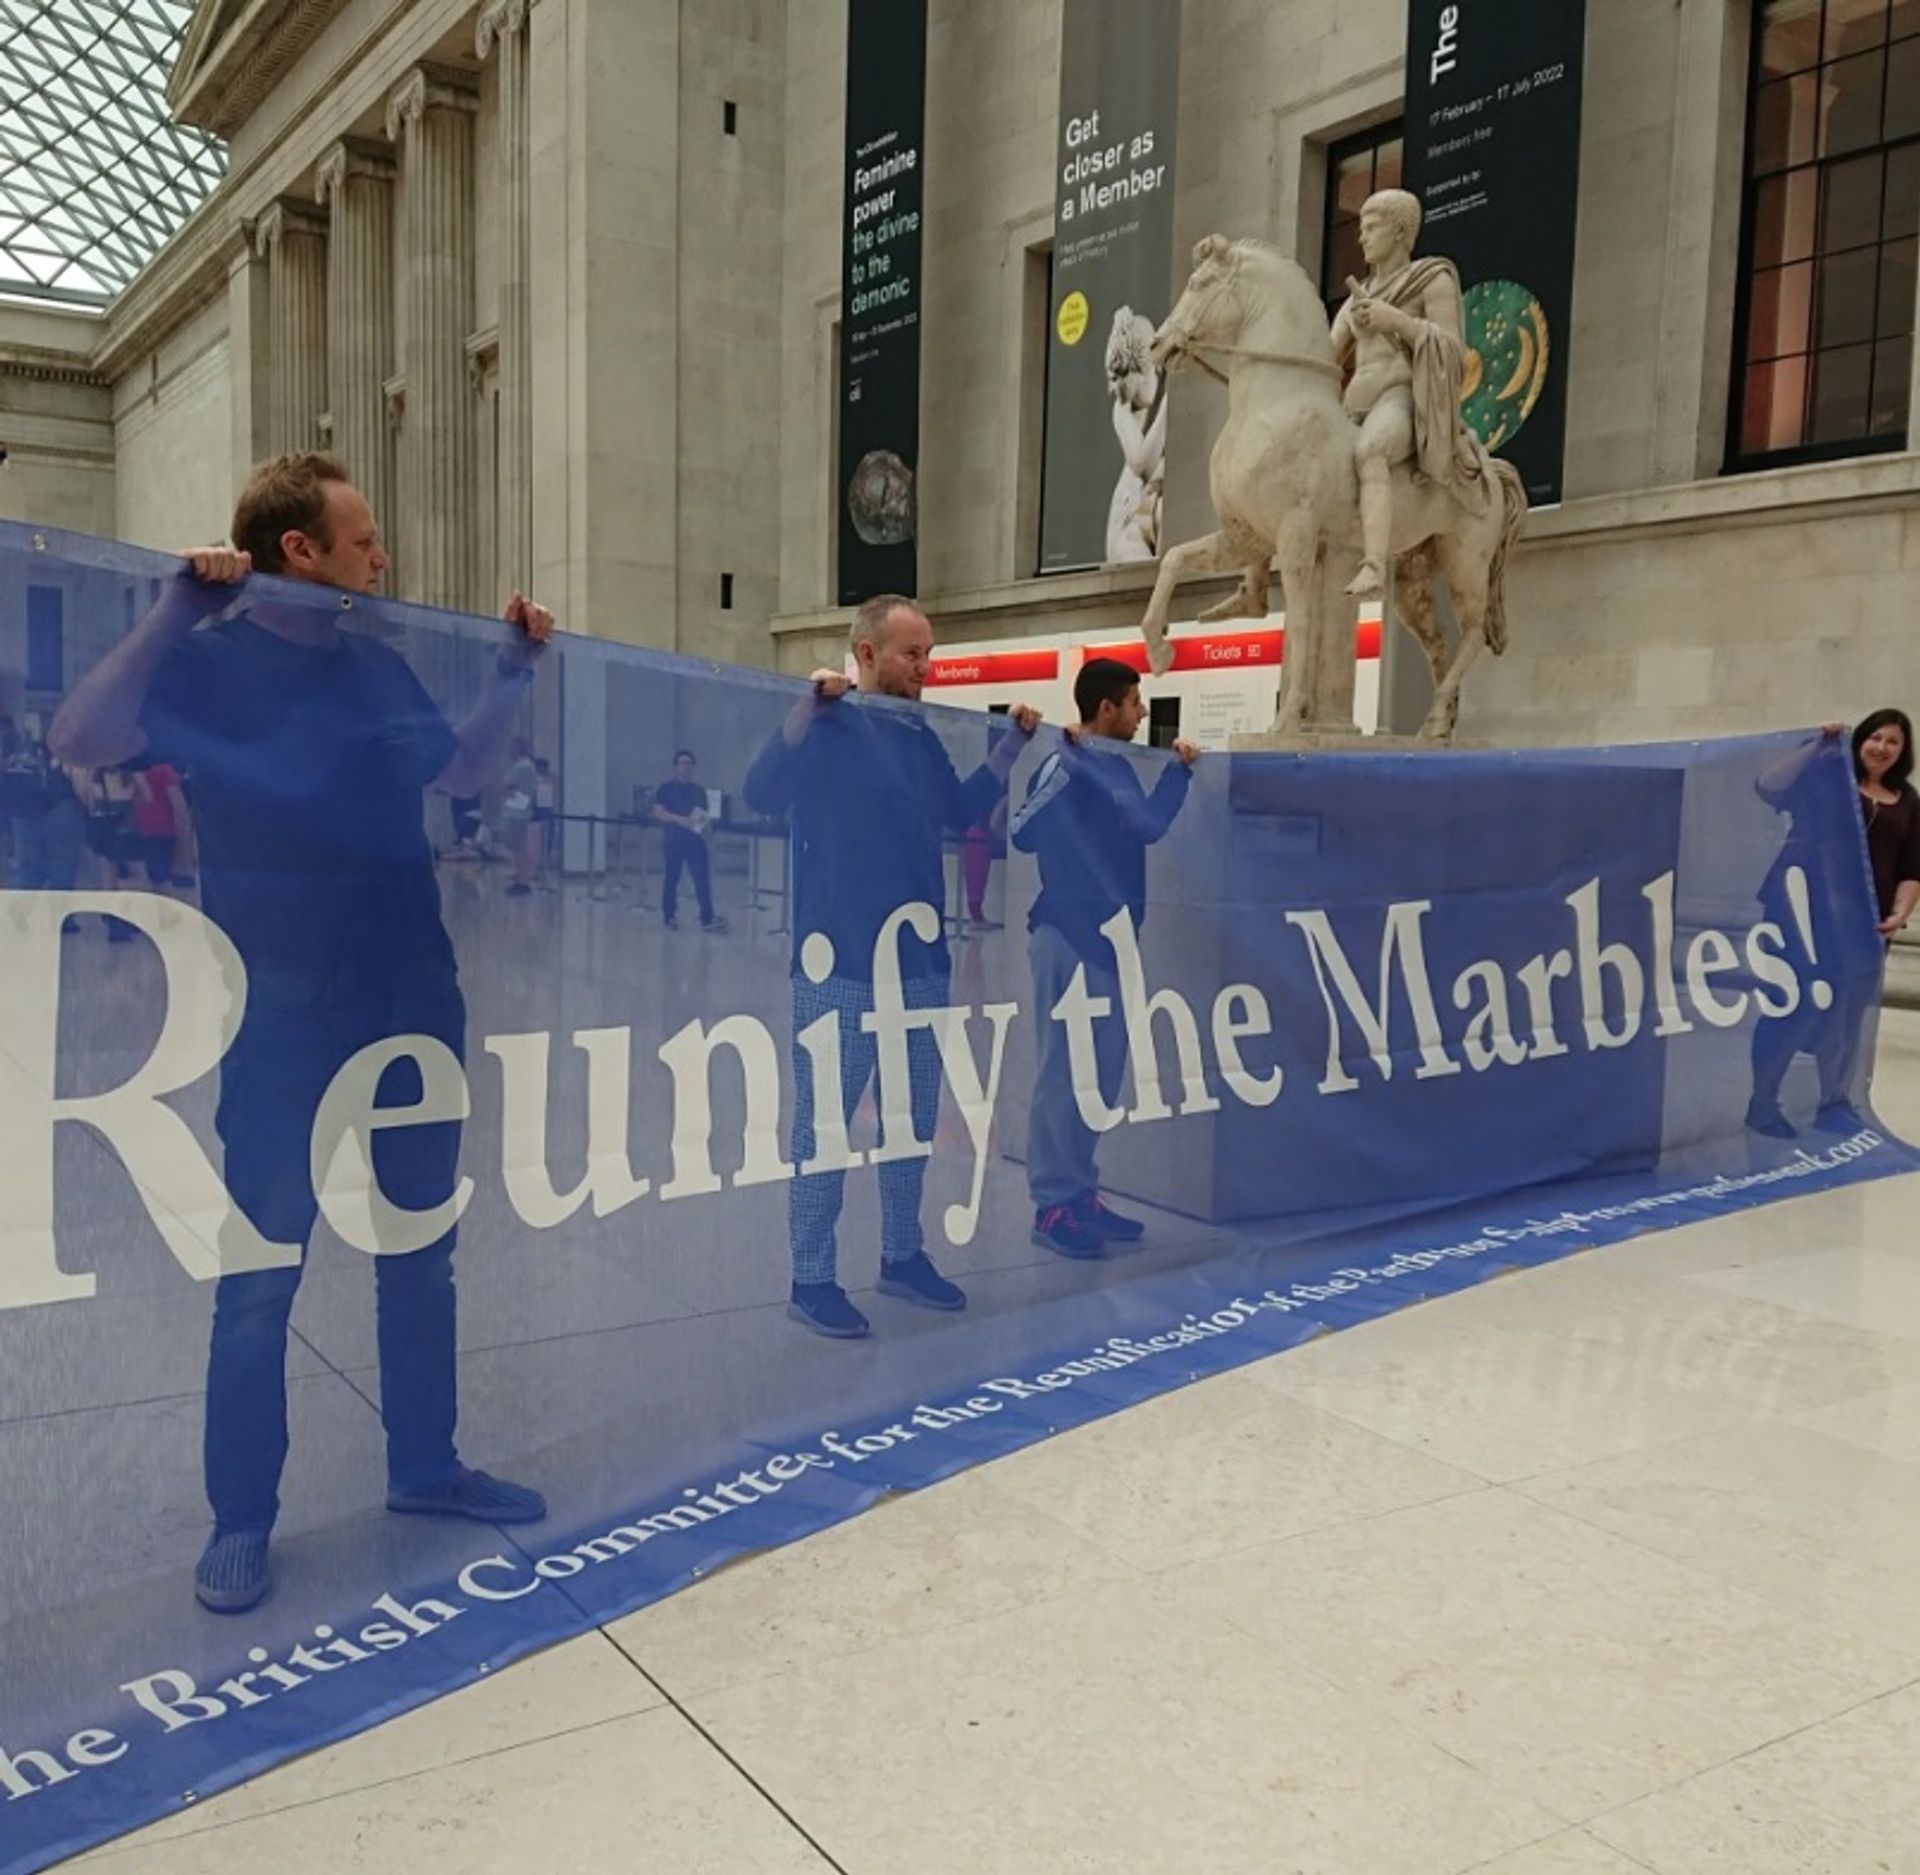 המחאה במוזיאון הבריטי בלונדון אורגנה על ידי קבוצת ההסברה, הוועדה הבריטית לאיחוד מחדש של פסלי הפרתנון (BCRPM).

באדיבות BCRPM